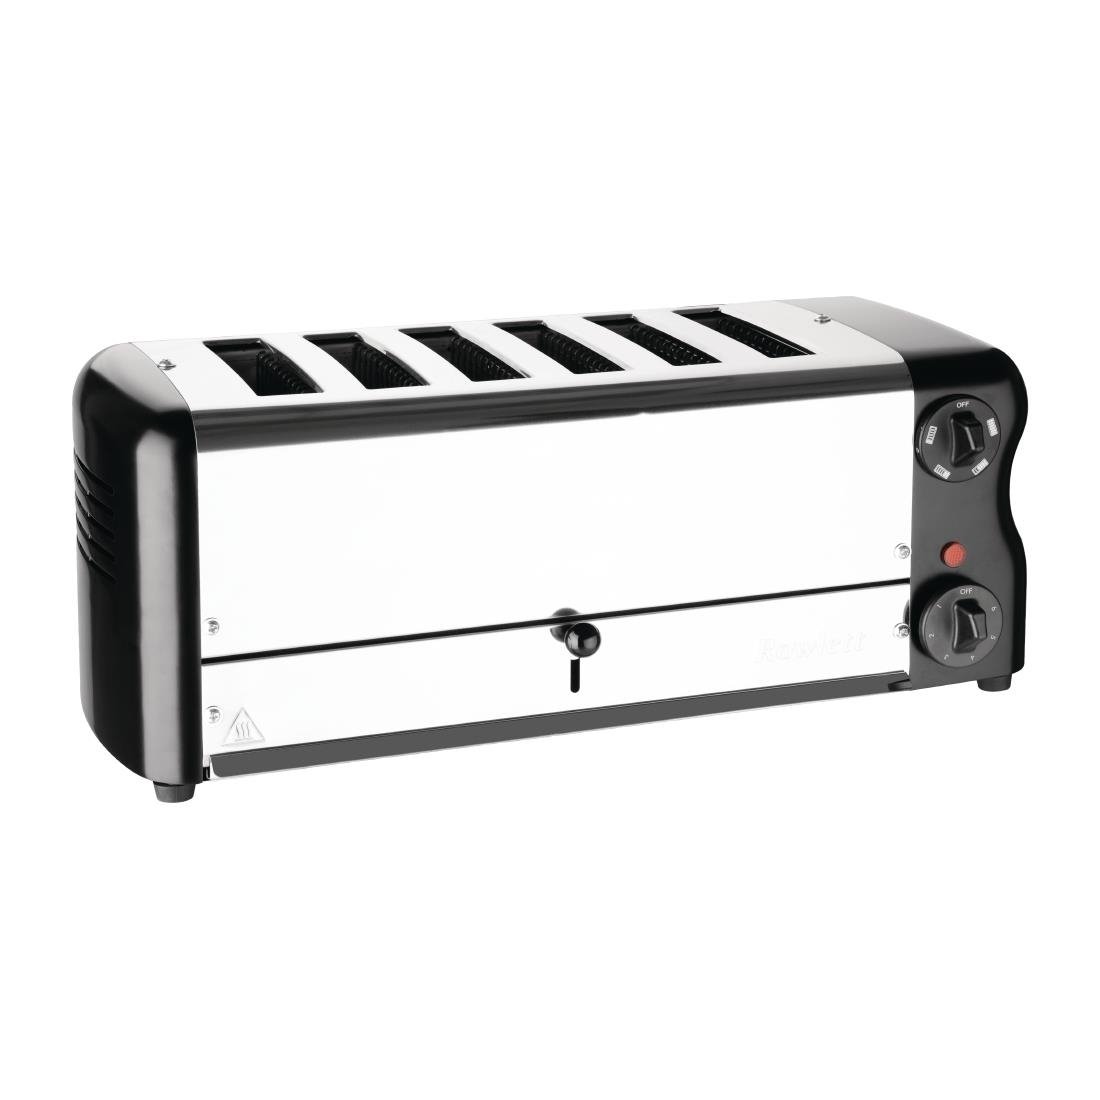 Rowlett Stainless Steel White 8 Slot Toaster